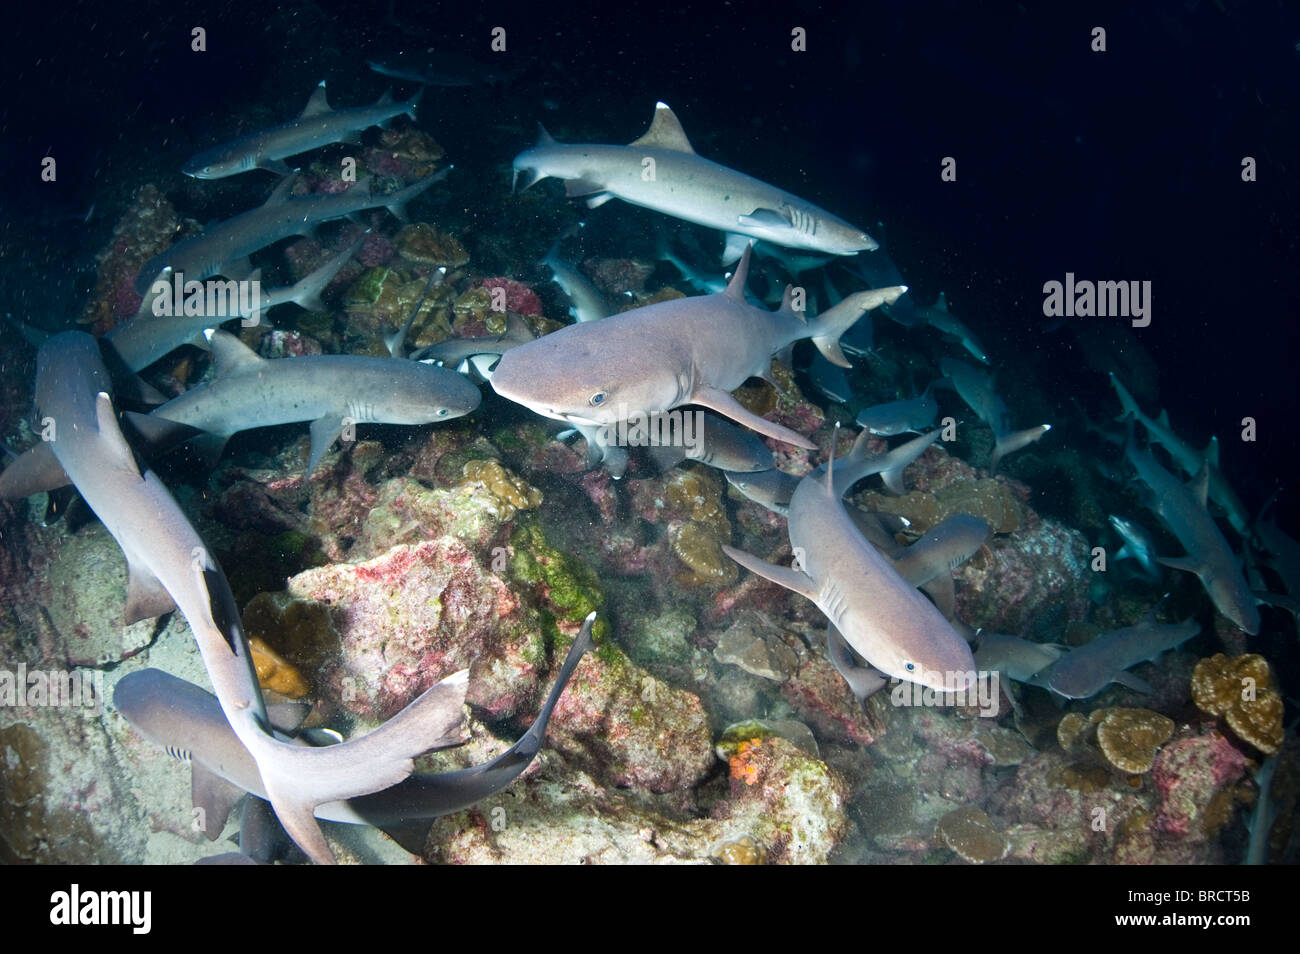 Les requins à pointe blanche Triaenodon obesus, chasse, dans la nuit, îles Cocos, Pacifique Banque D'Images